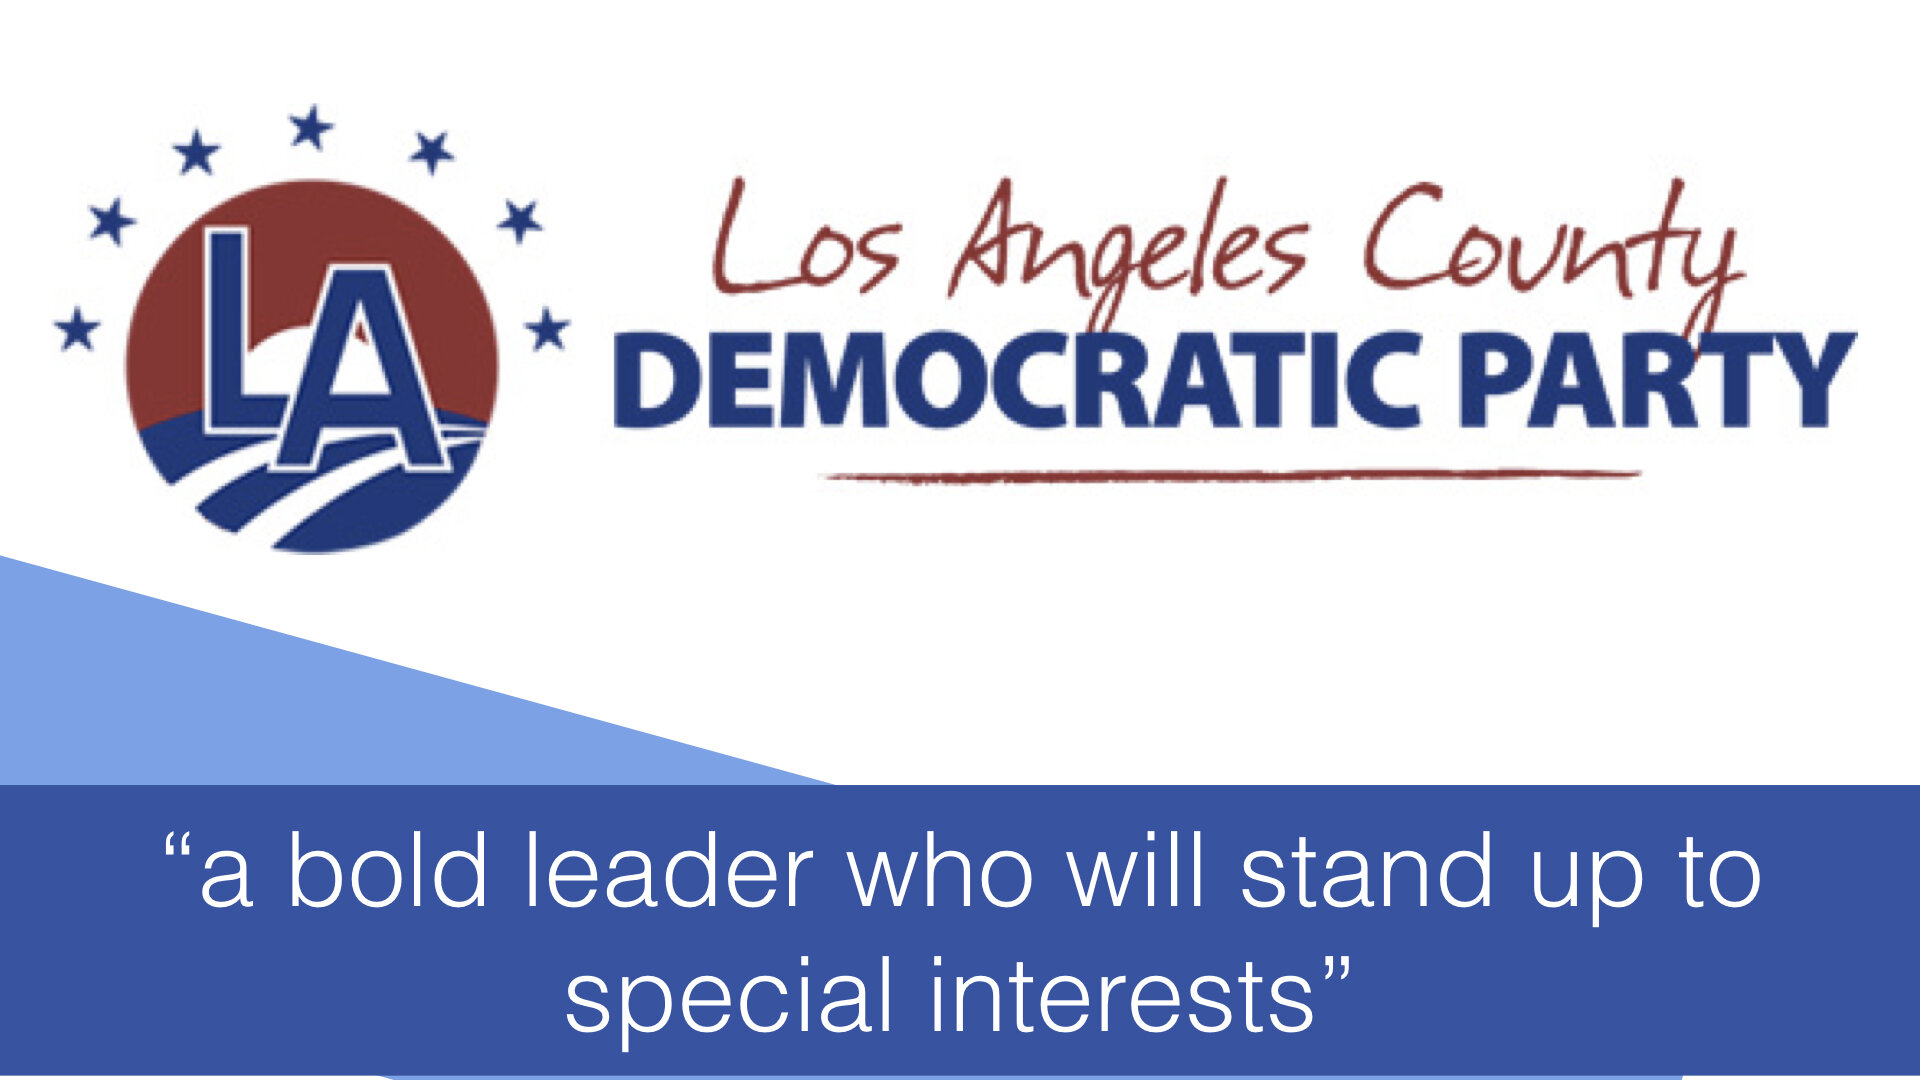 Los Angeles County Democratic Party